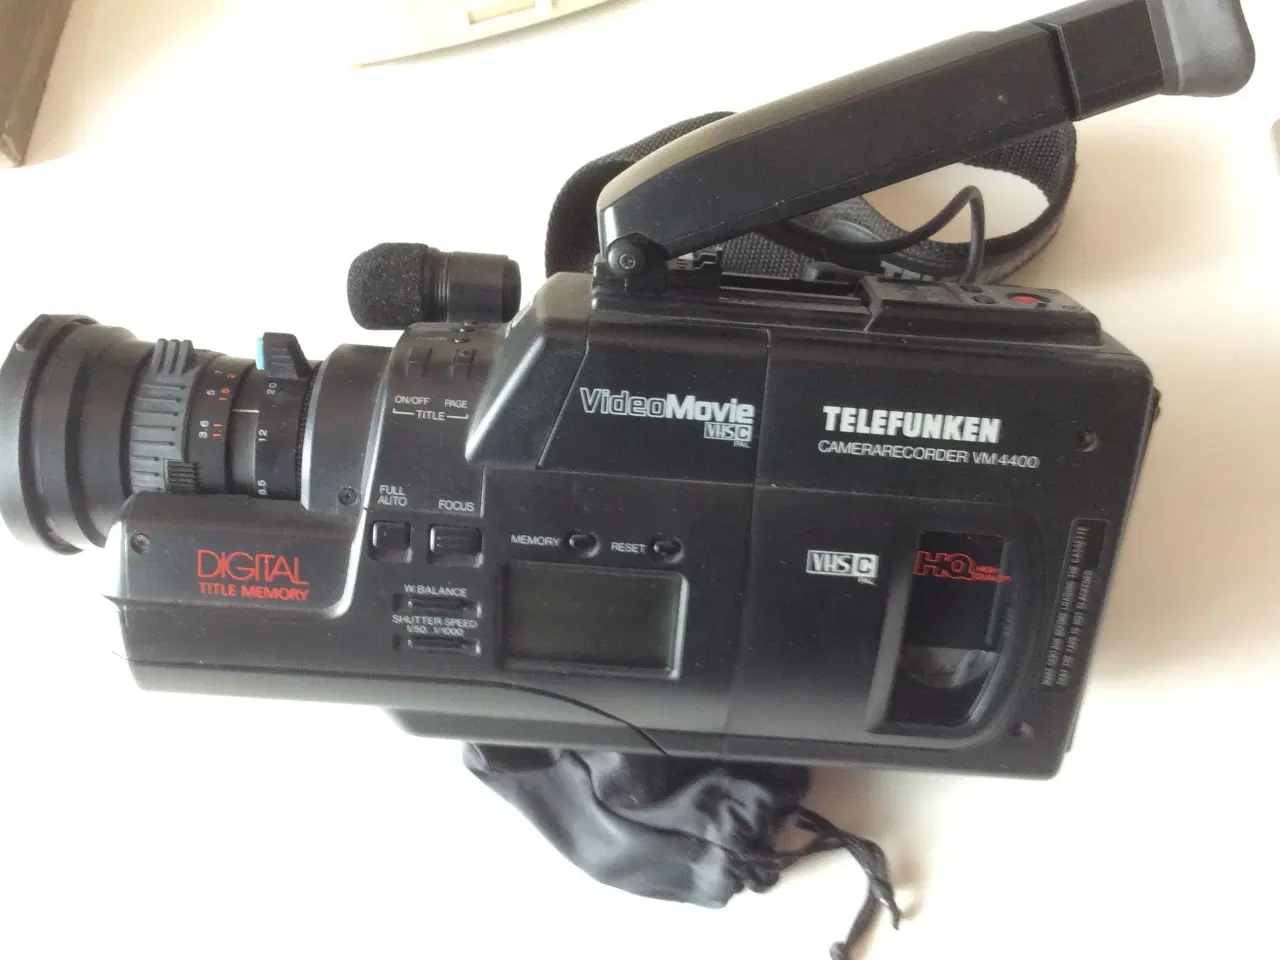 Billede 1 - Video Telefunken camerarecorder VM 4400